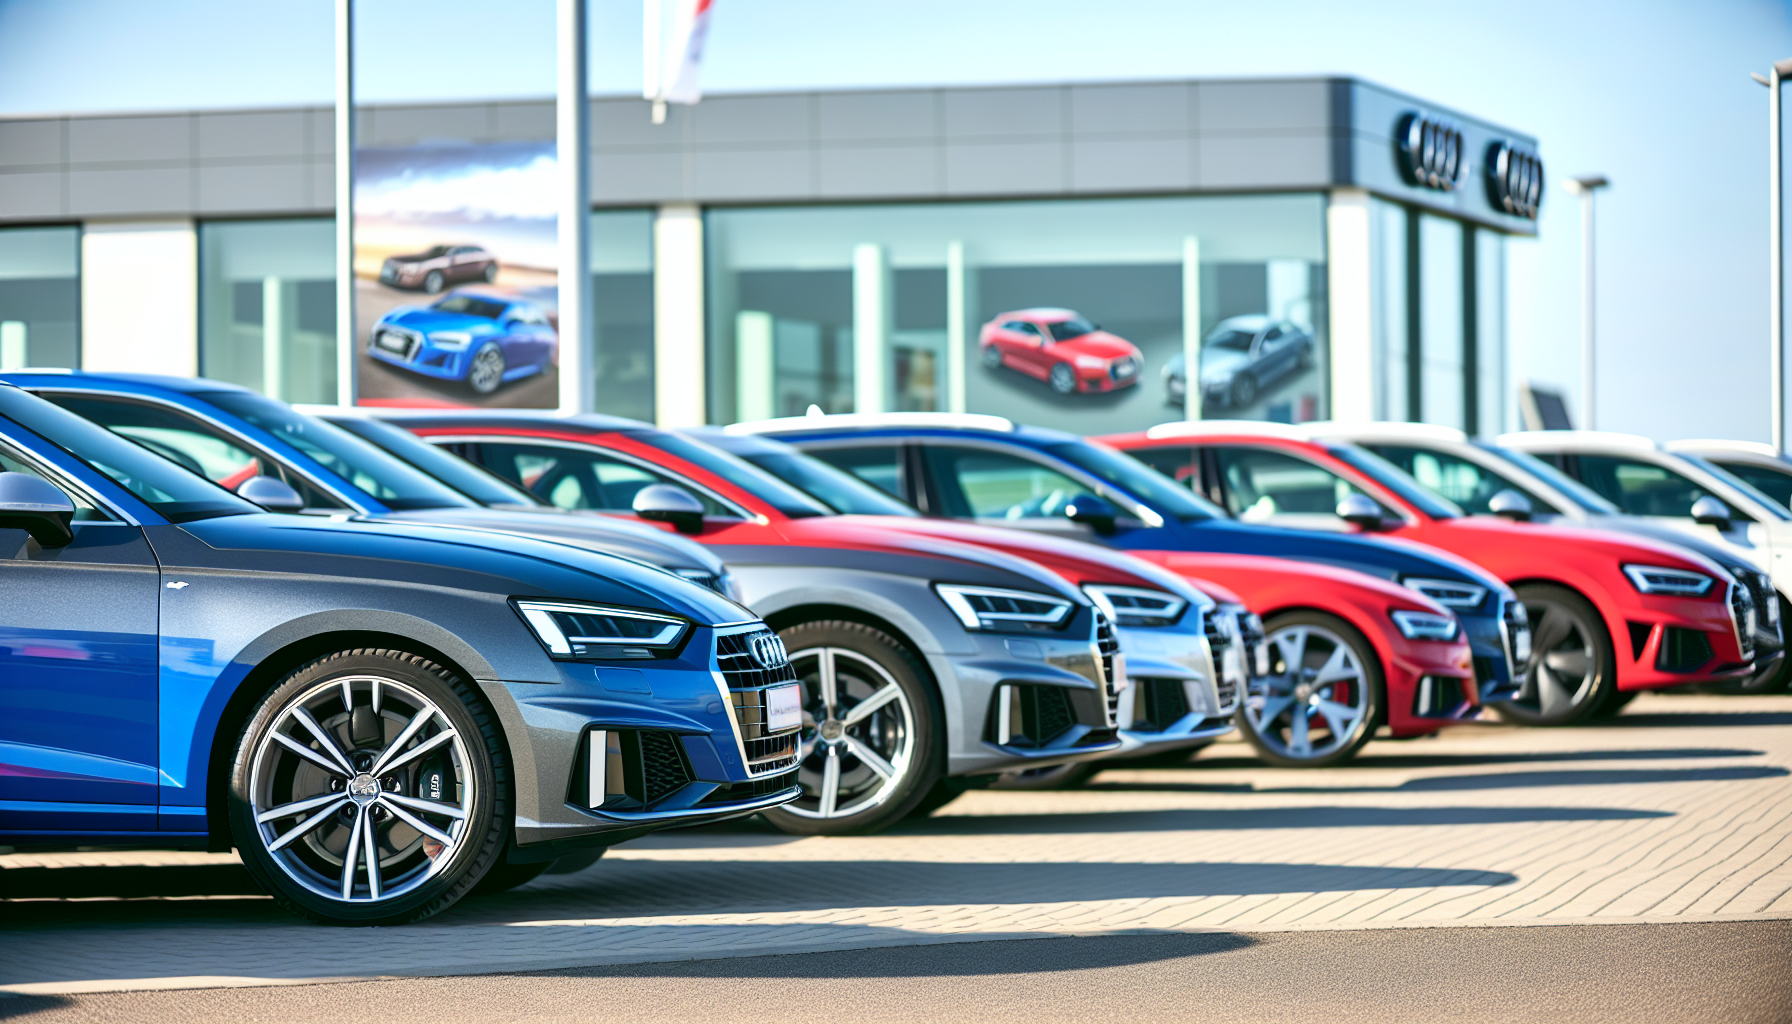 Verschiedene Audi-Fahrzeuge in einer Reihe in einem Autohaus